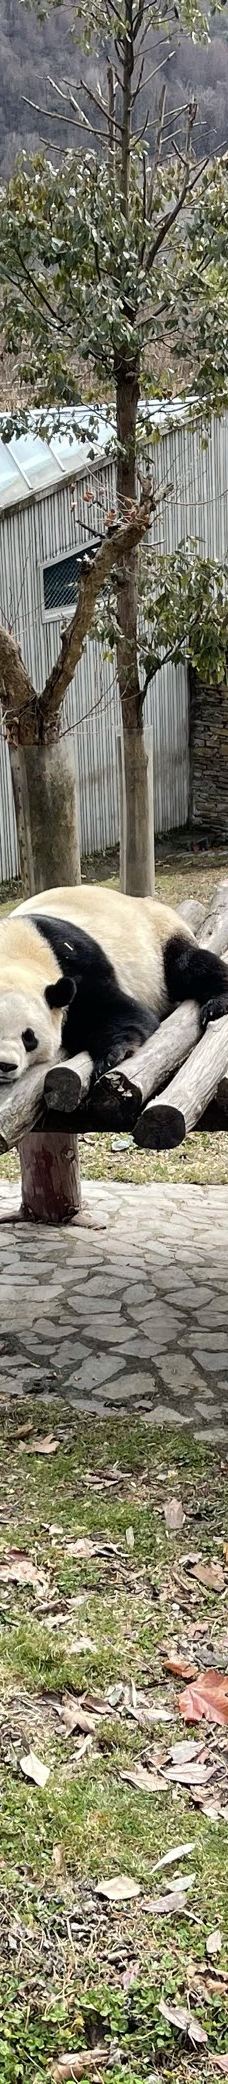 卧龙中华大熊猫苑神树坪基地-汶川